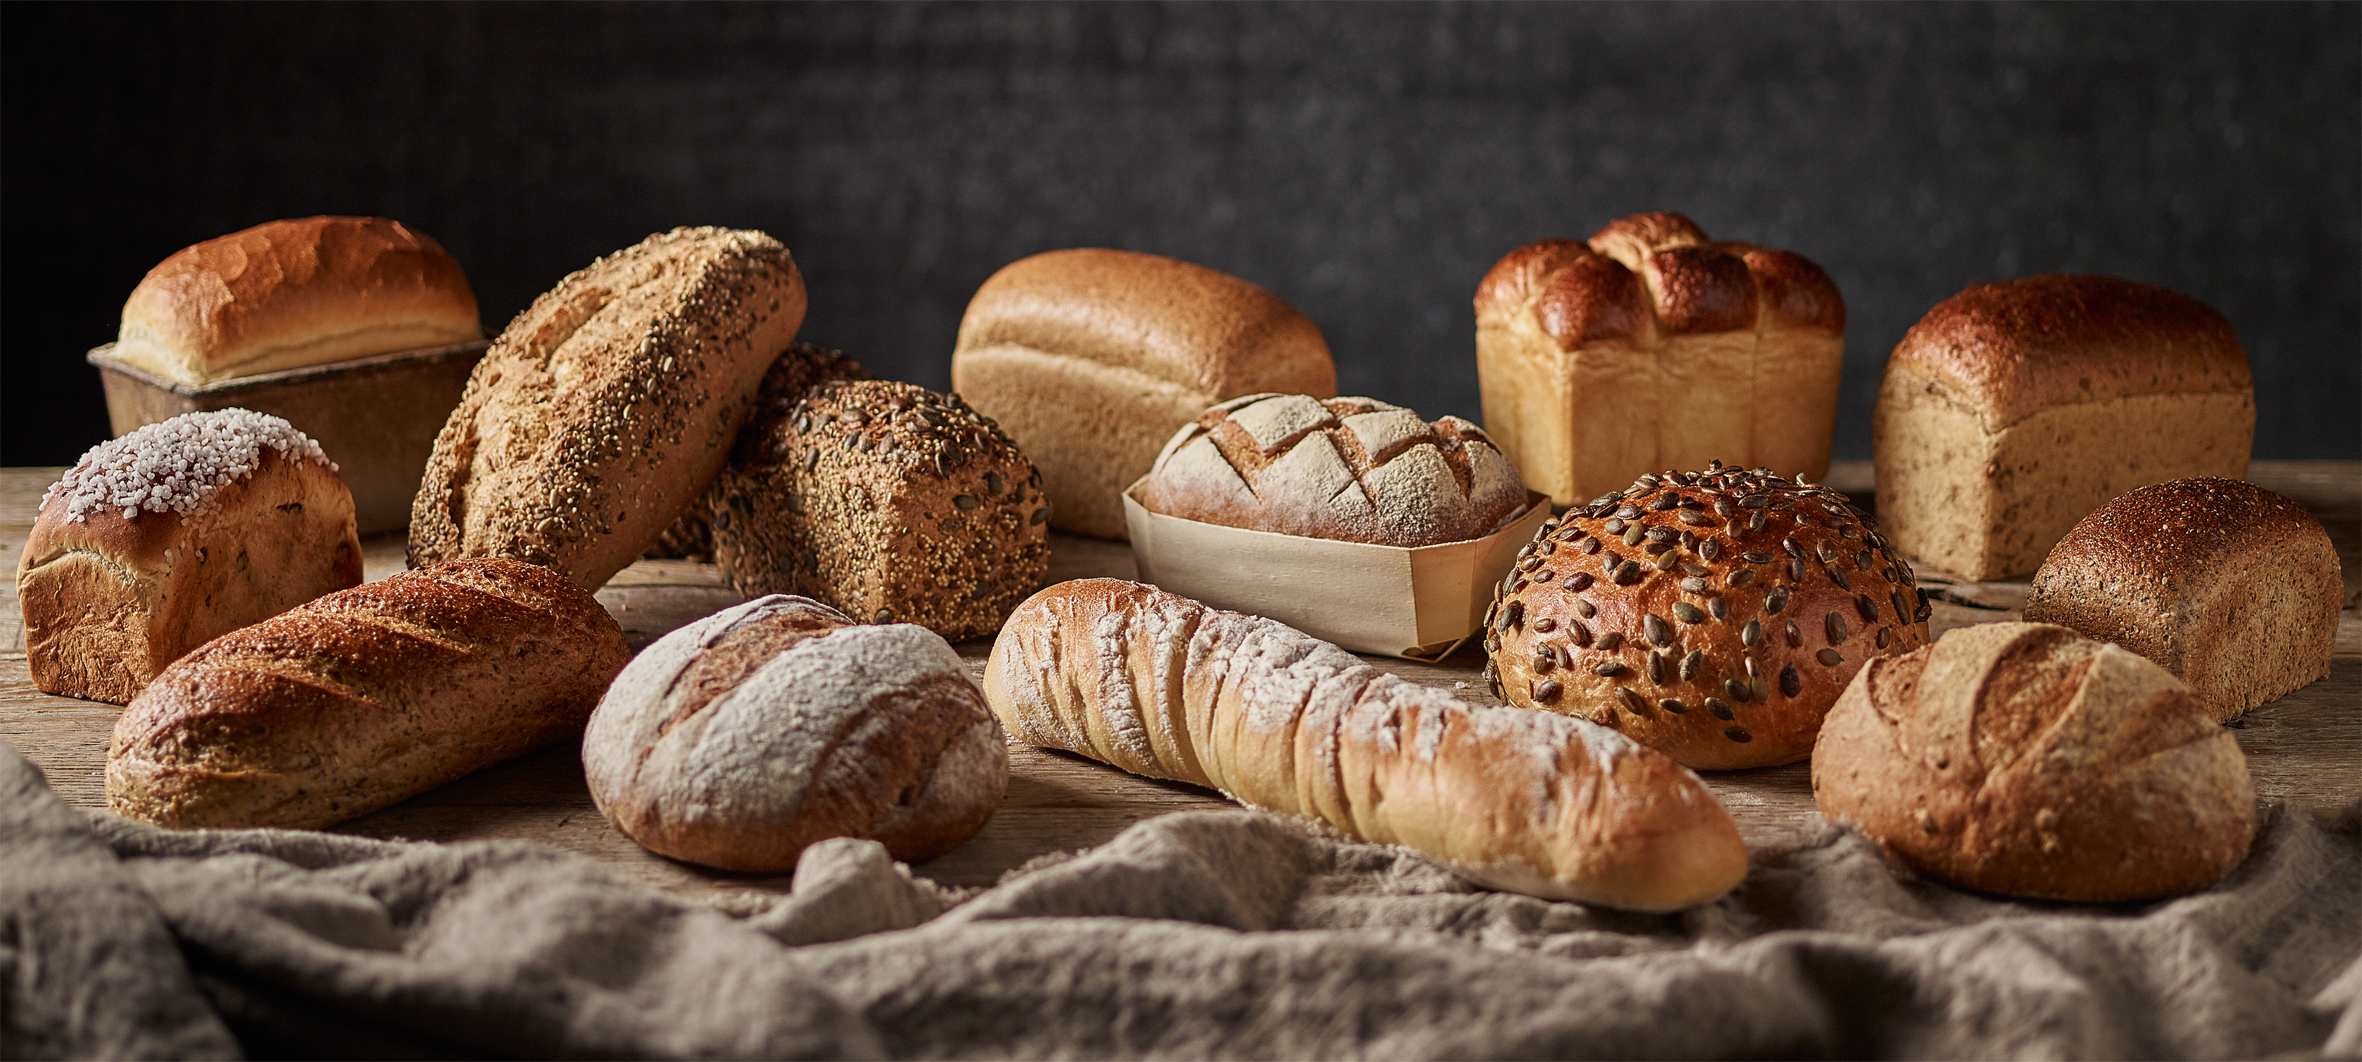 bettys-artisan-breads.jpg